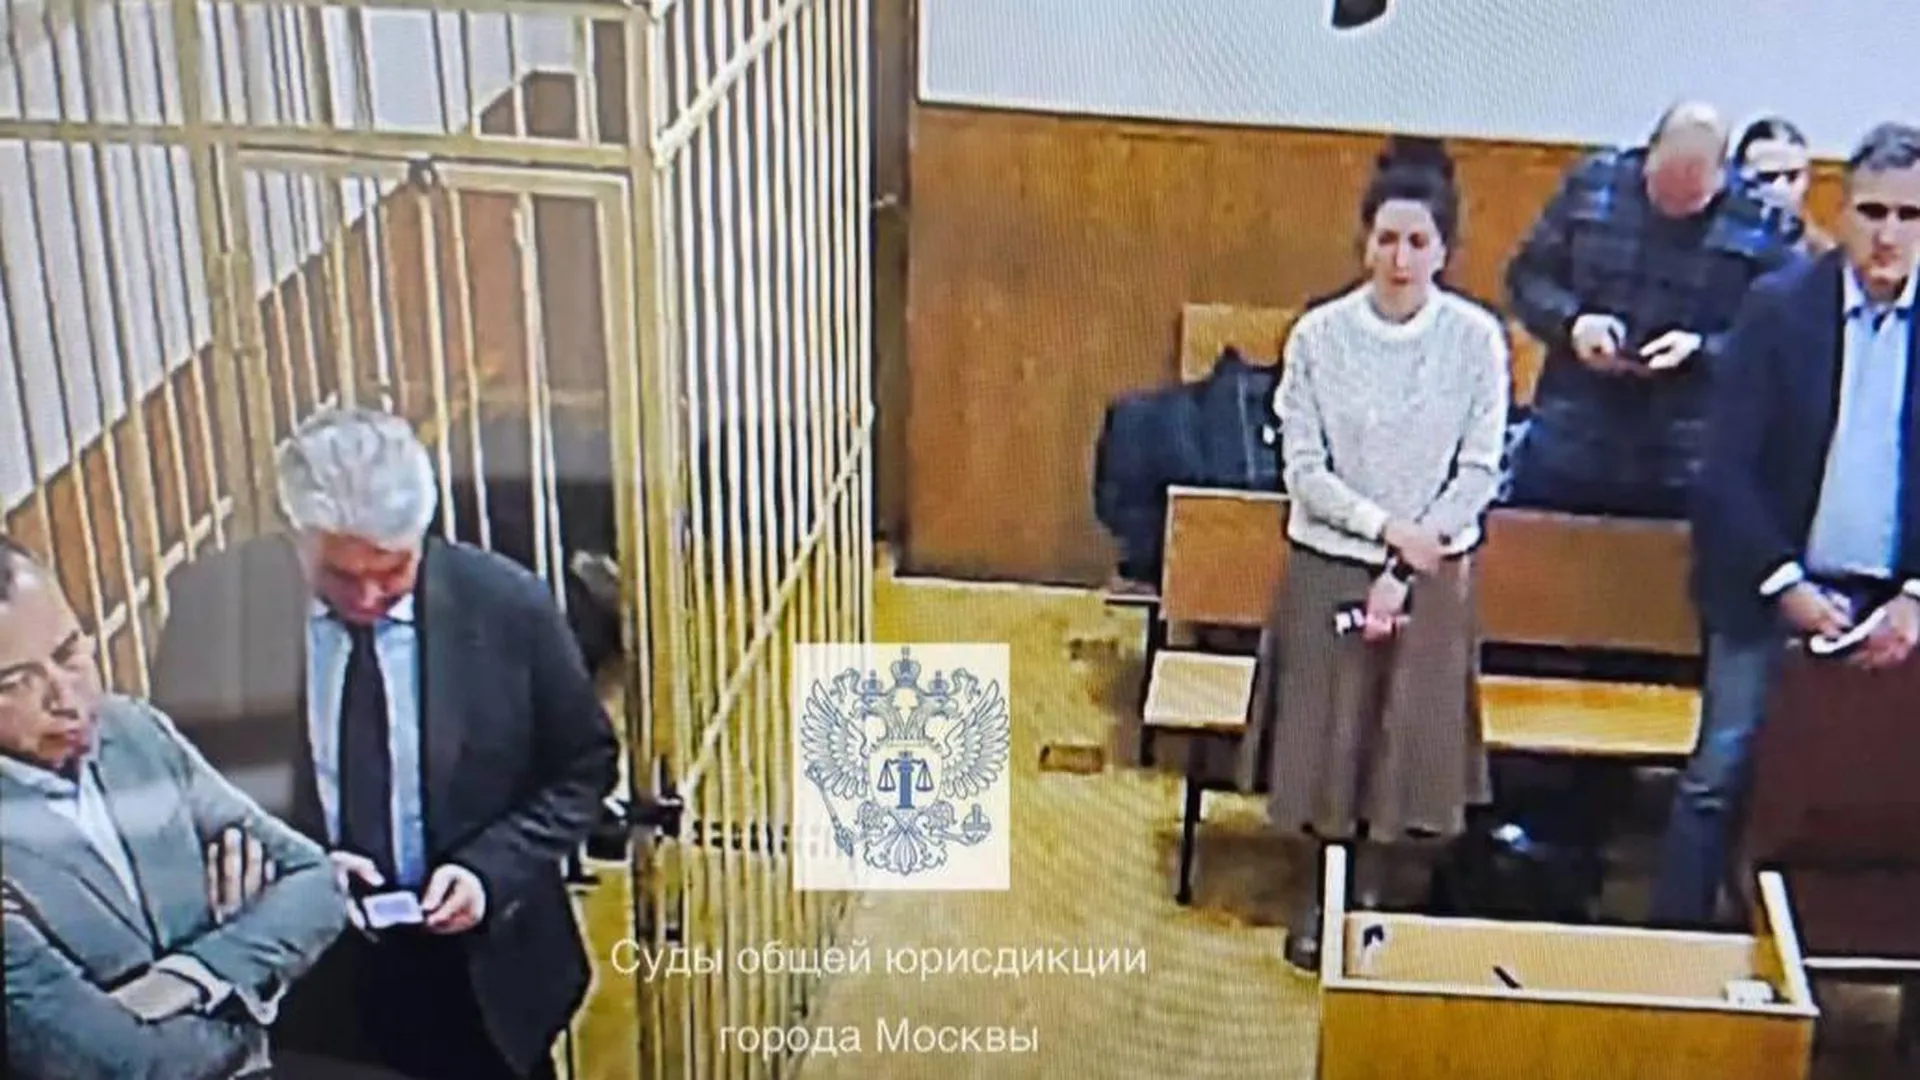 Суды общей юрисдикции города Москвы